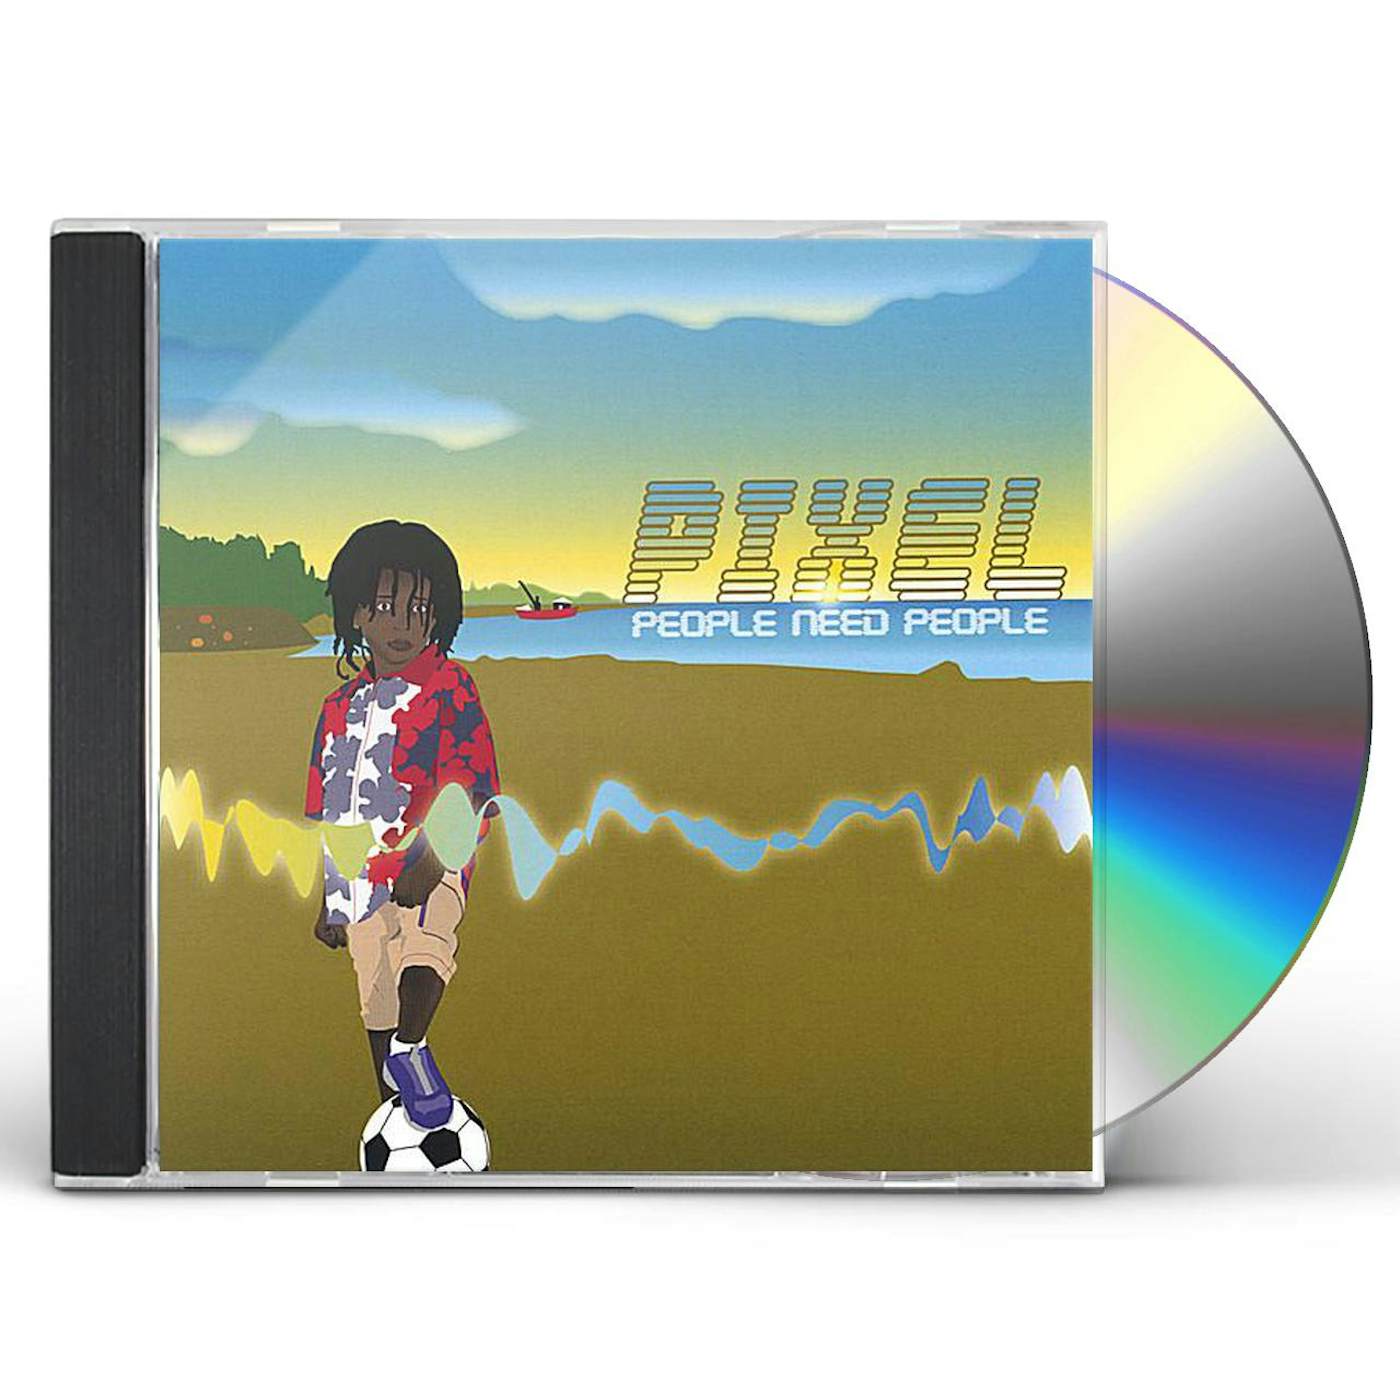 Pixel PEOPLE NEED PEOPLE CD